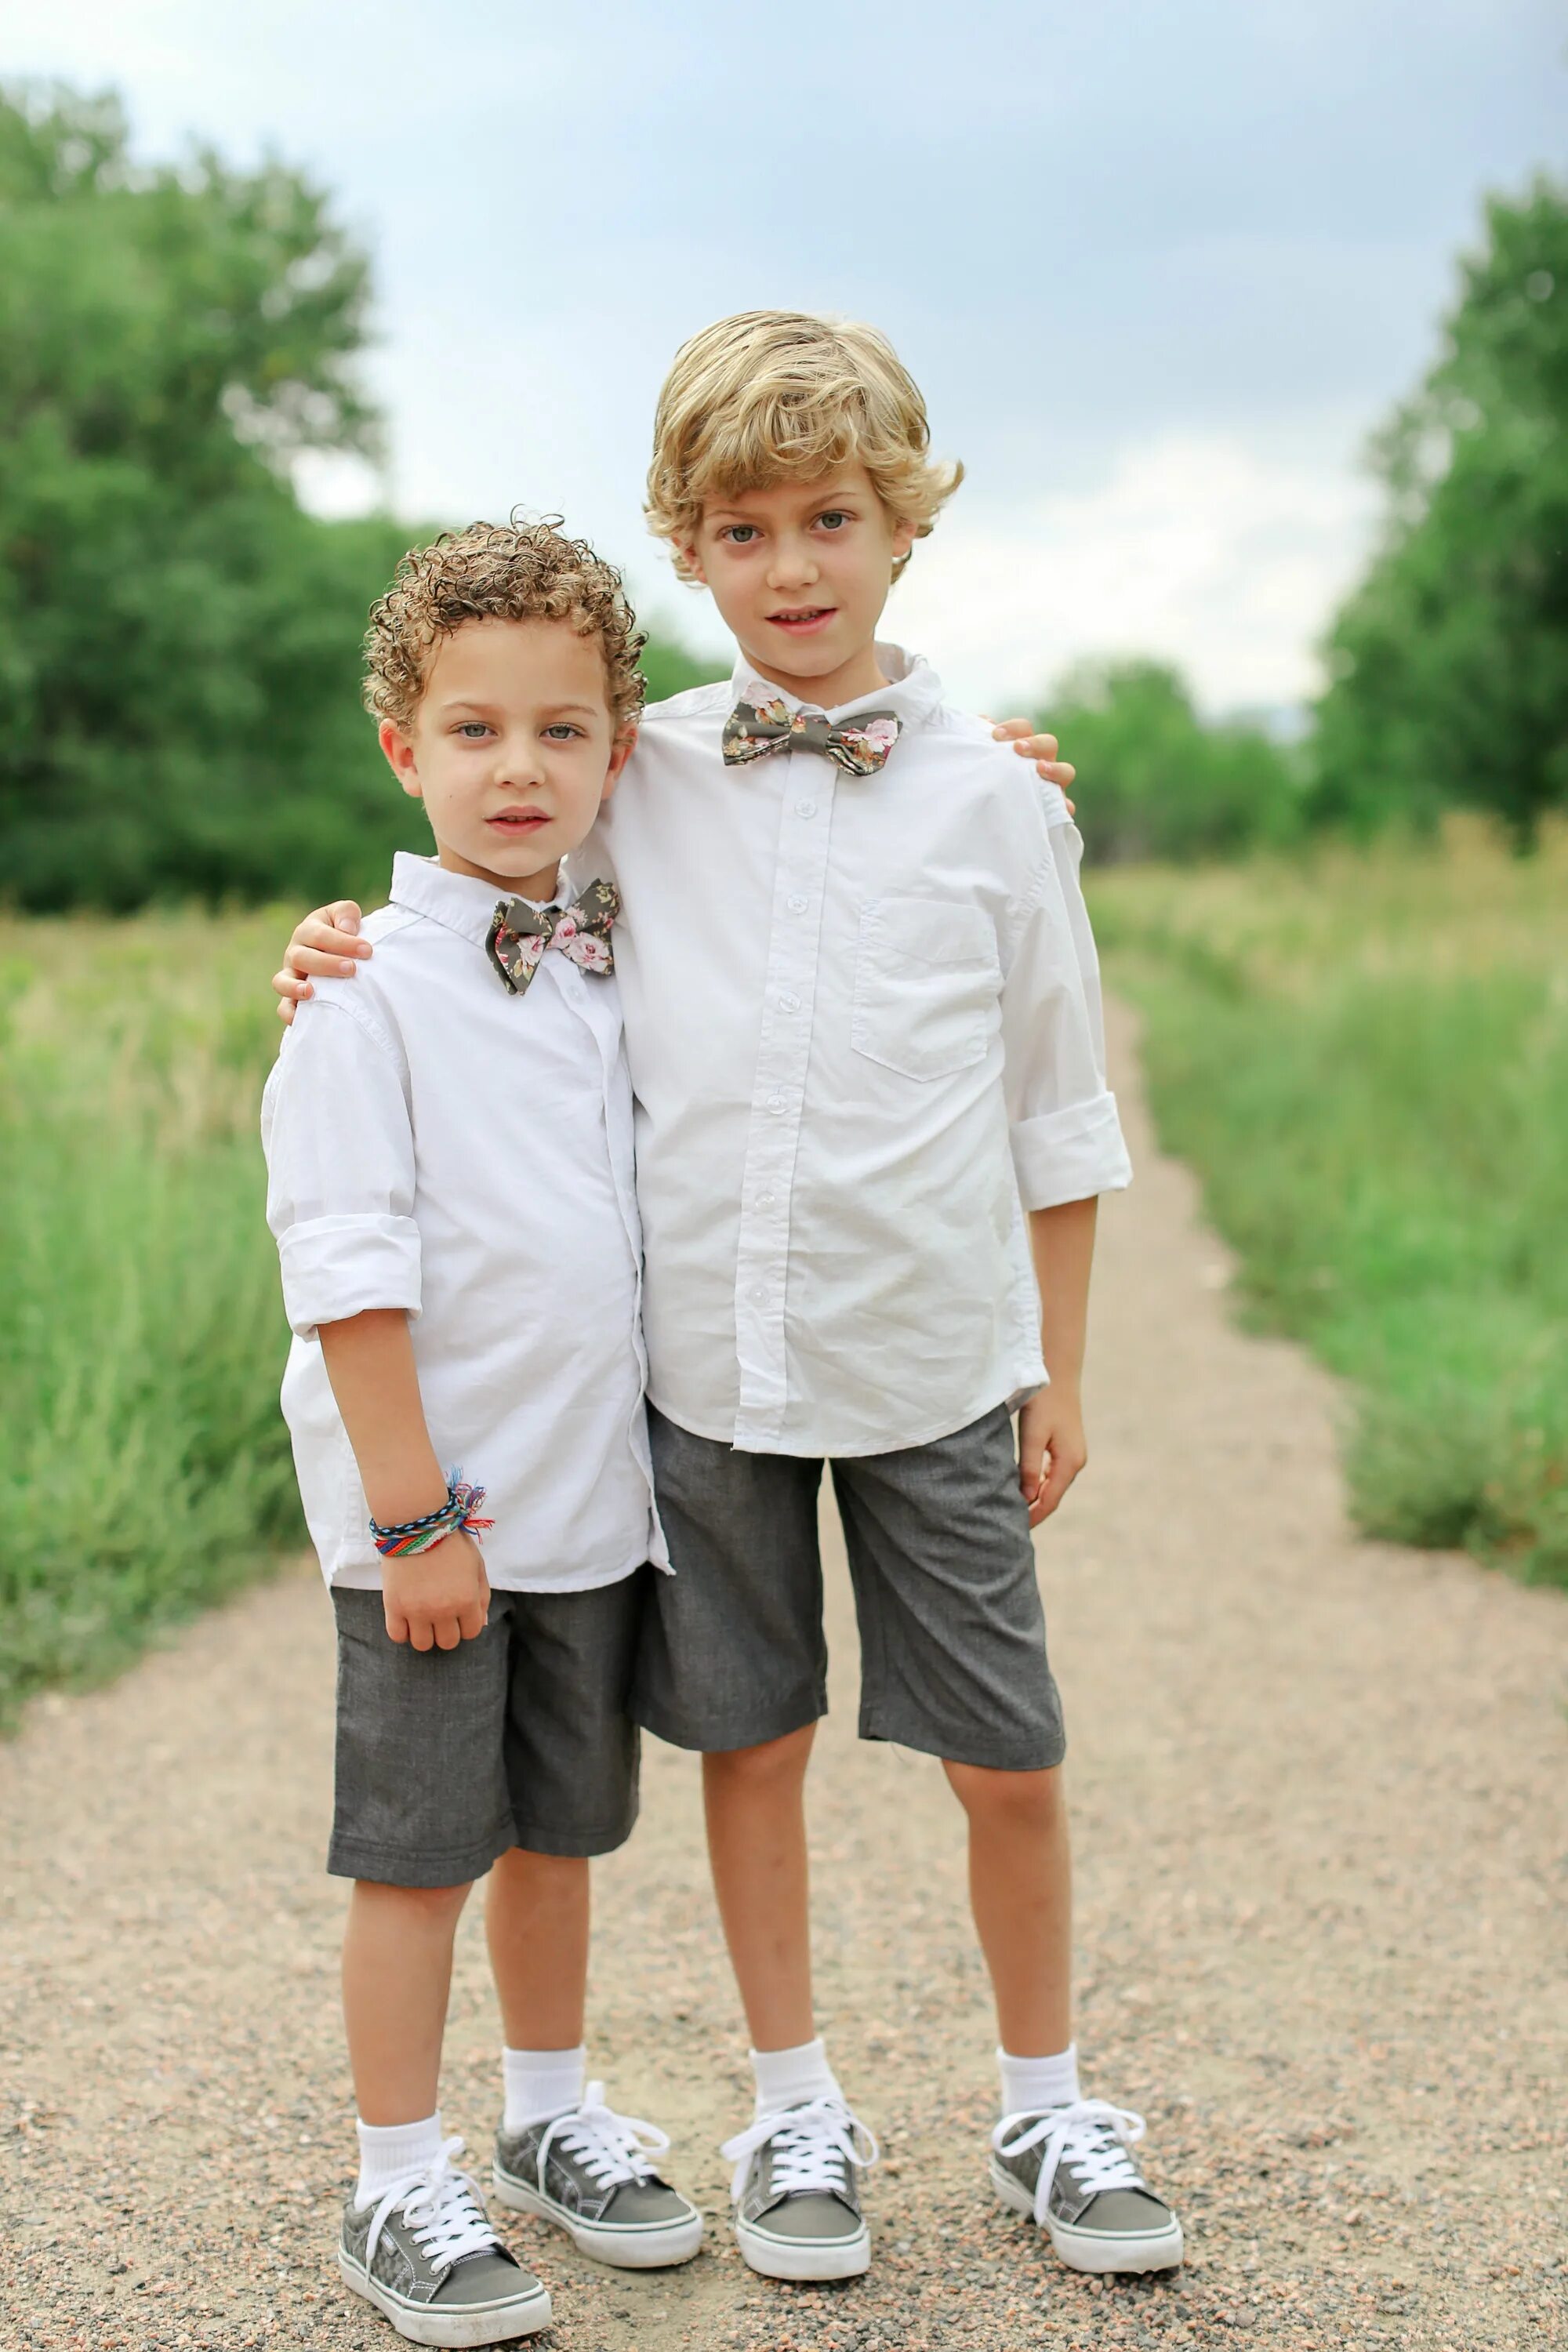 Младший брат подросток. Одежда для мальчиков на свадьбу. Два мальчика. Летний образ для мальчика. Наряд мальчику на свадьбу летом.